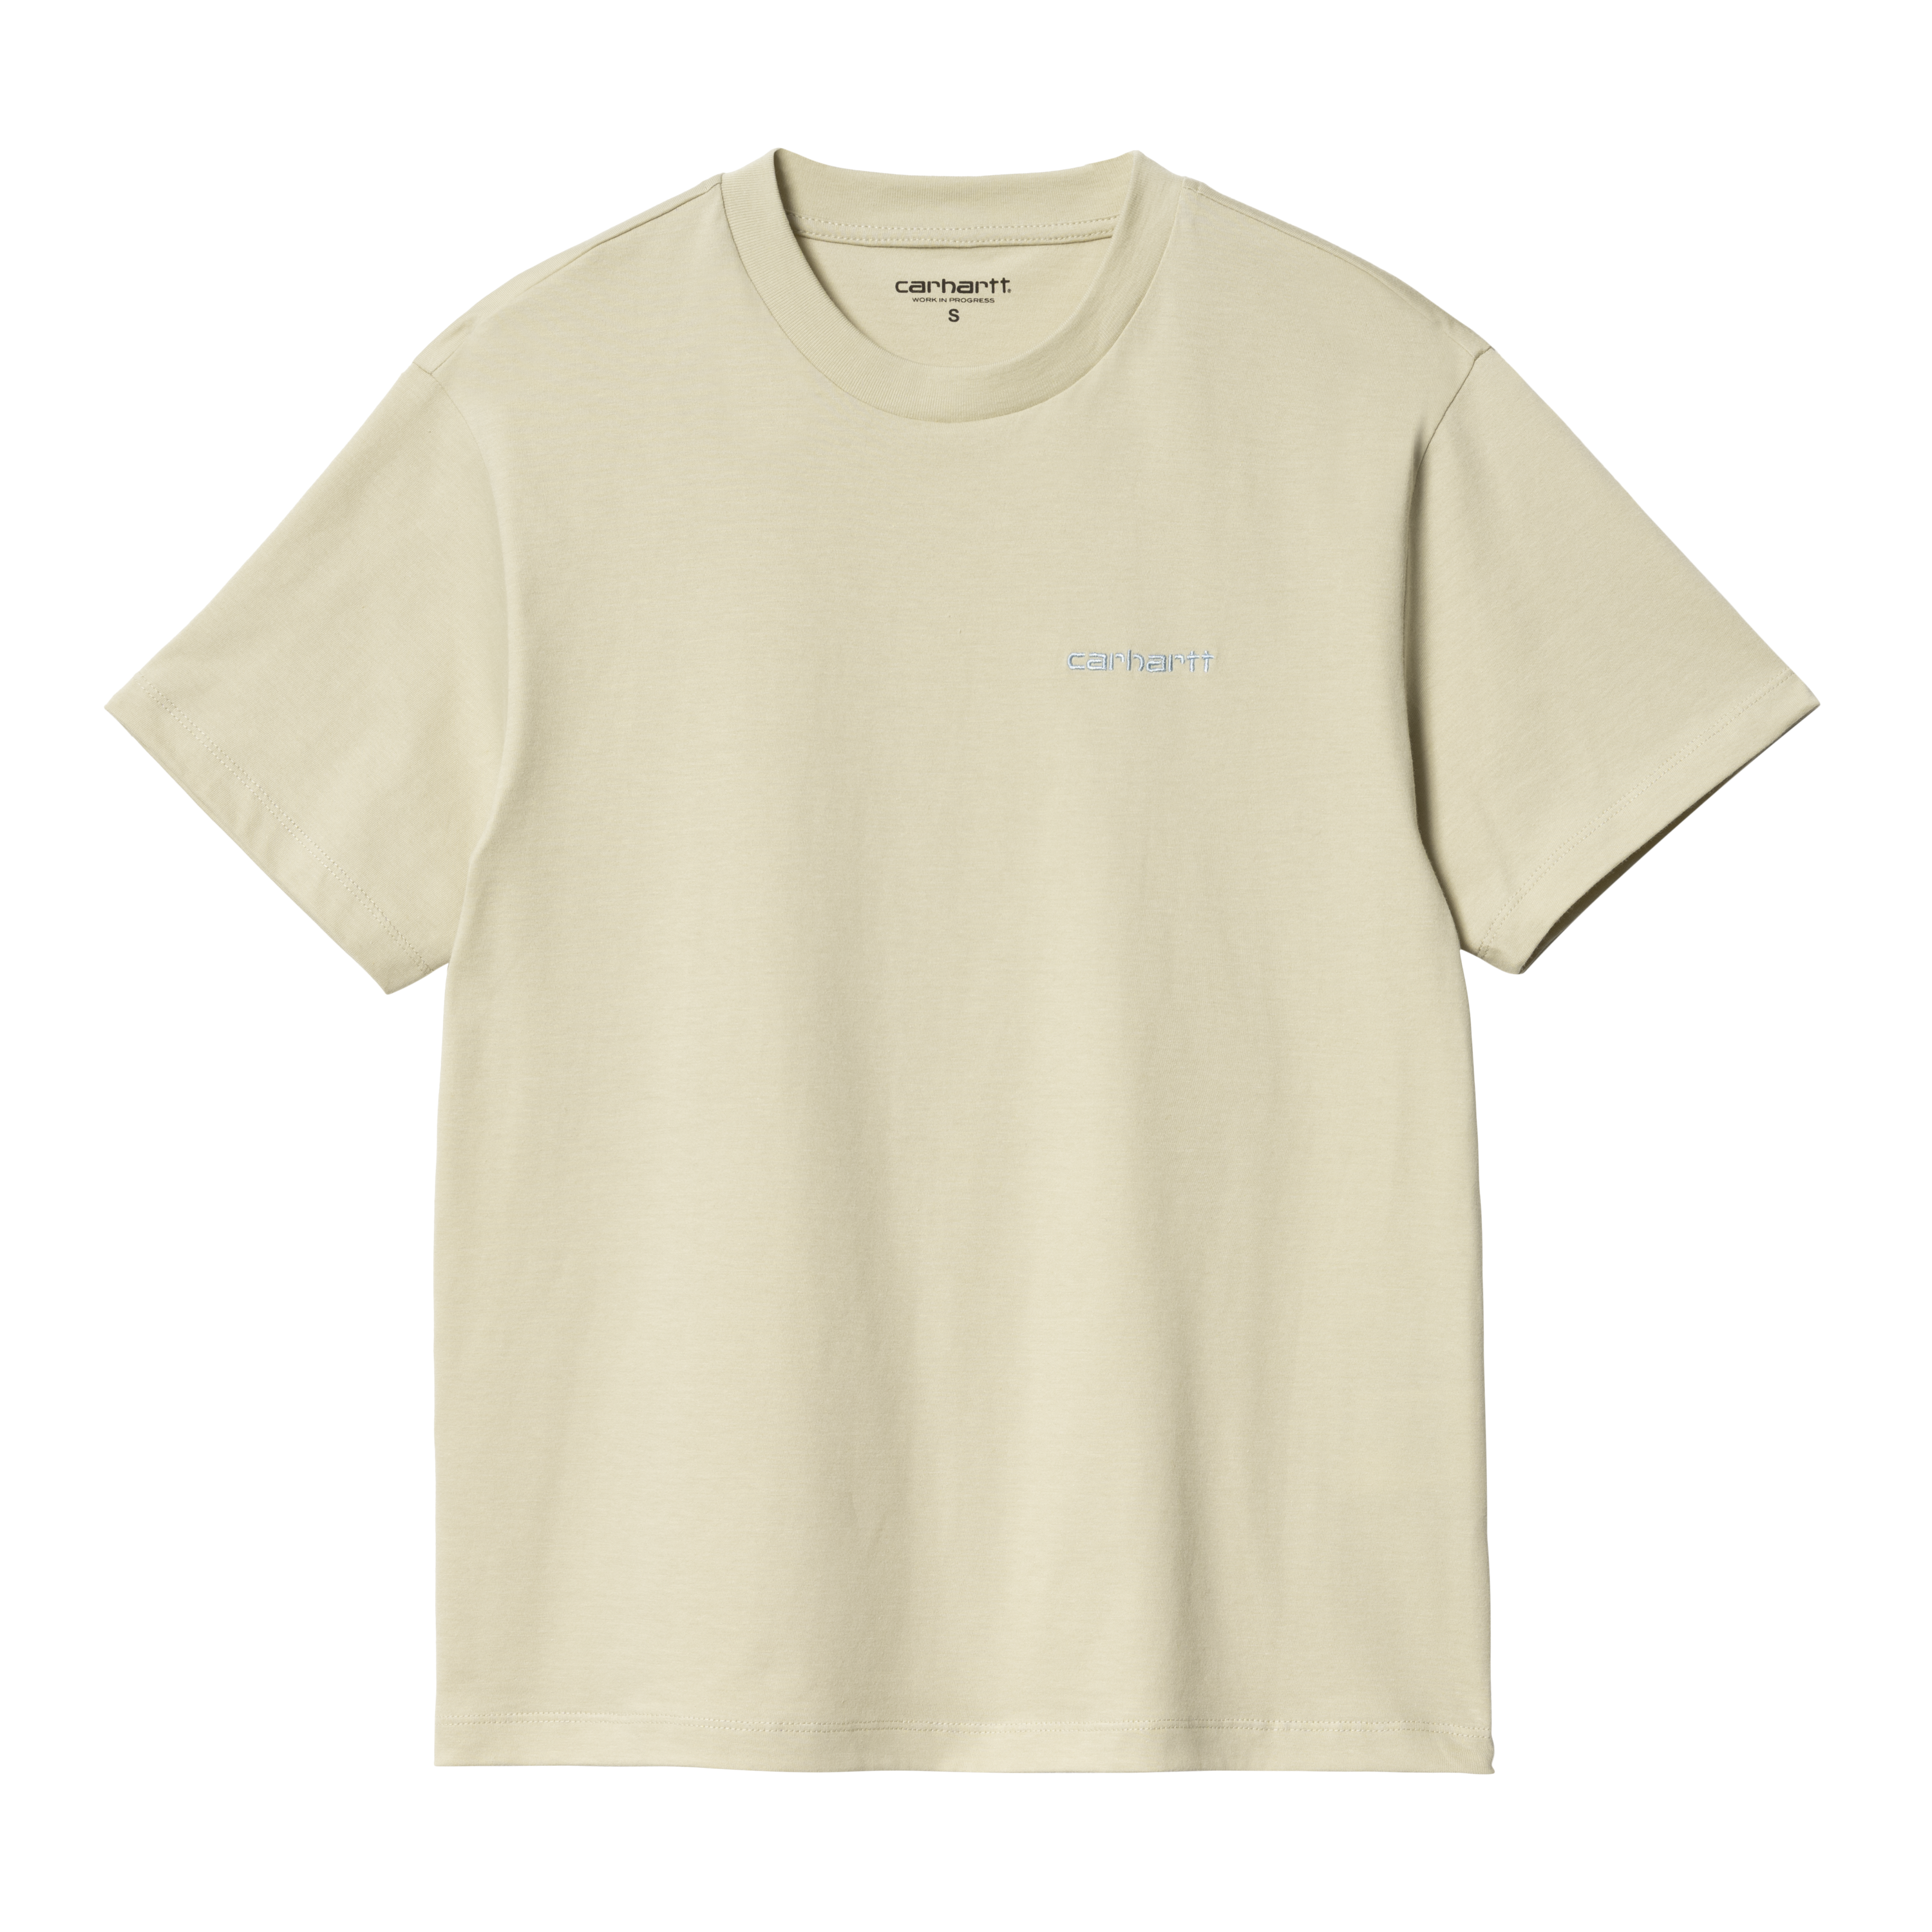 Carhartt WIP Women’s Short Sleeve Script Embroidery T-Shirt in Beige